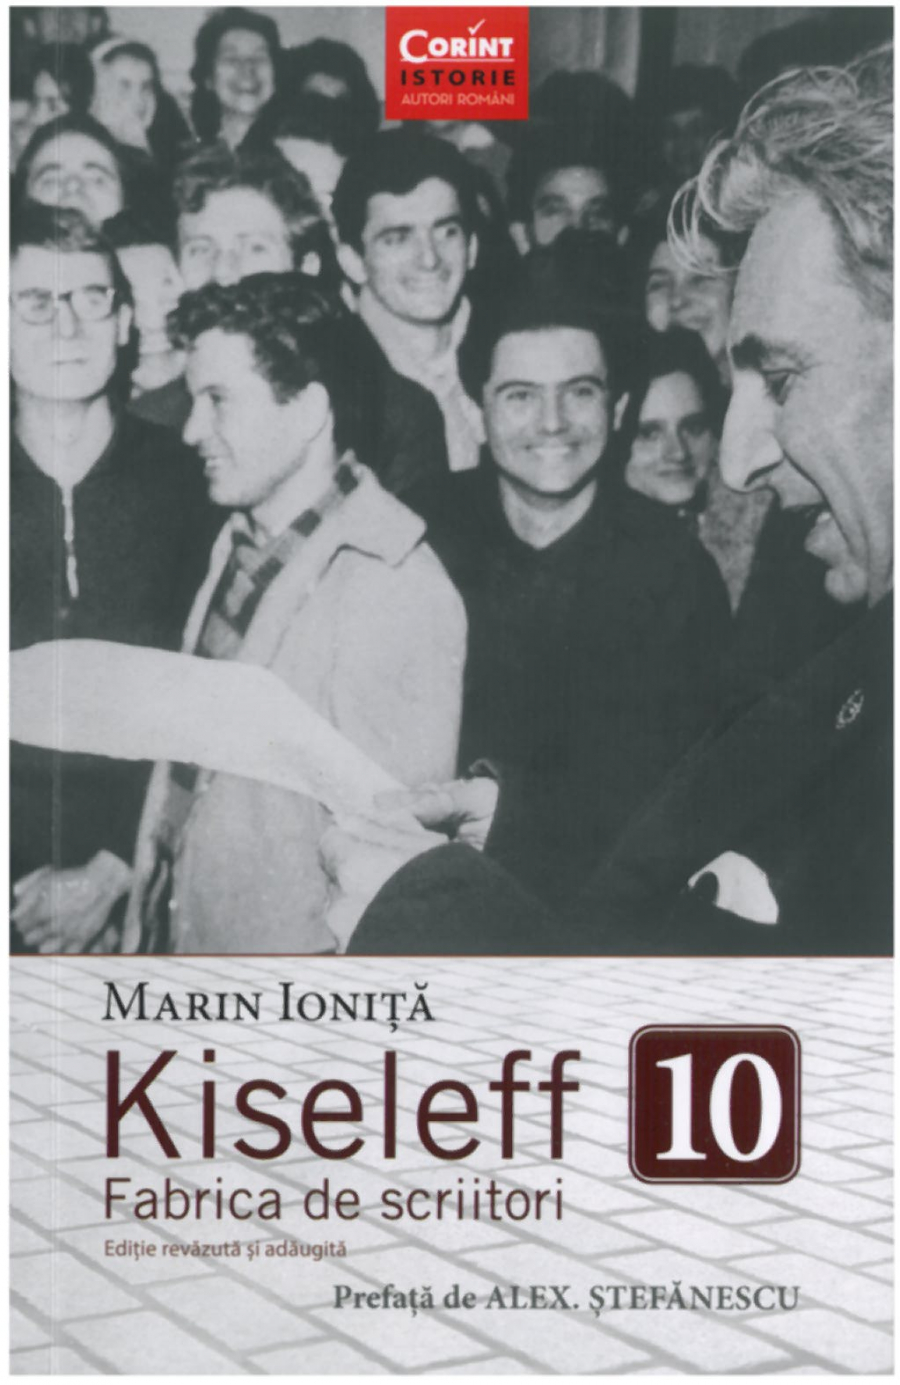 CRONICĂ DE CARTE | Marin Ioniță: ”Kiseleff 10”. ”Fabrica de scriitori”